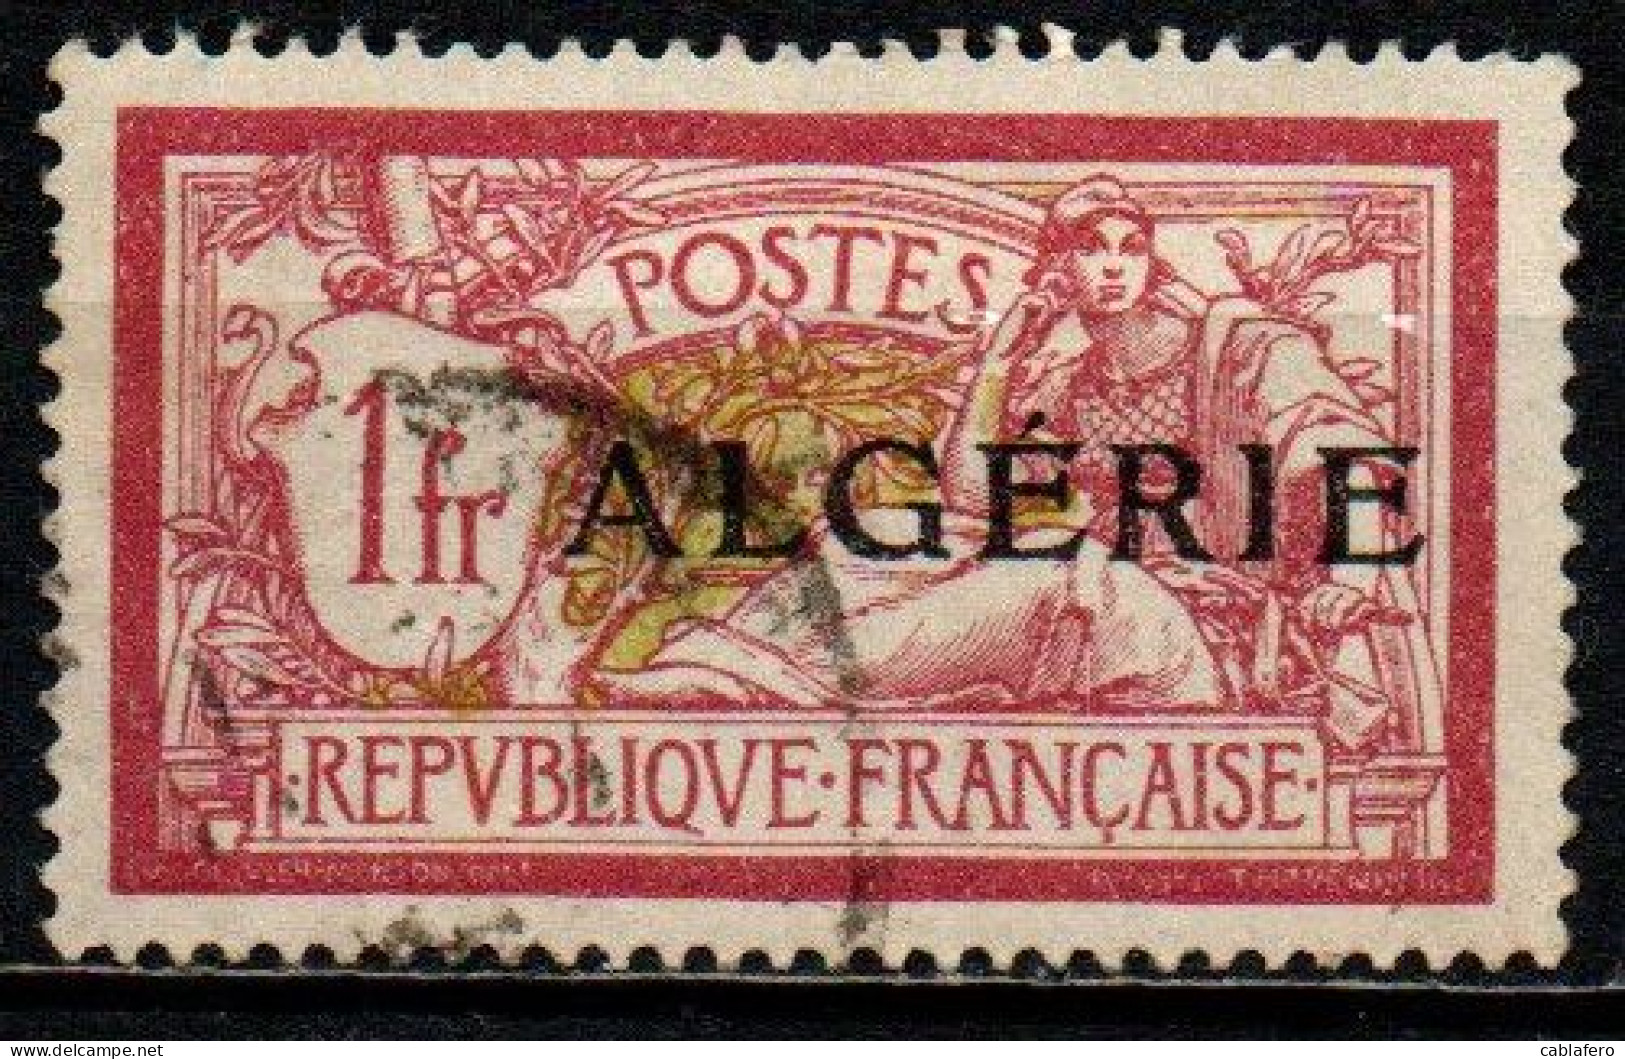 ALGERIA - 1924 - FRANCOBOLLO DI FRANCIA CON SOVRASTAMPA "ALGERIE" - USATO - Oblitérés